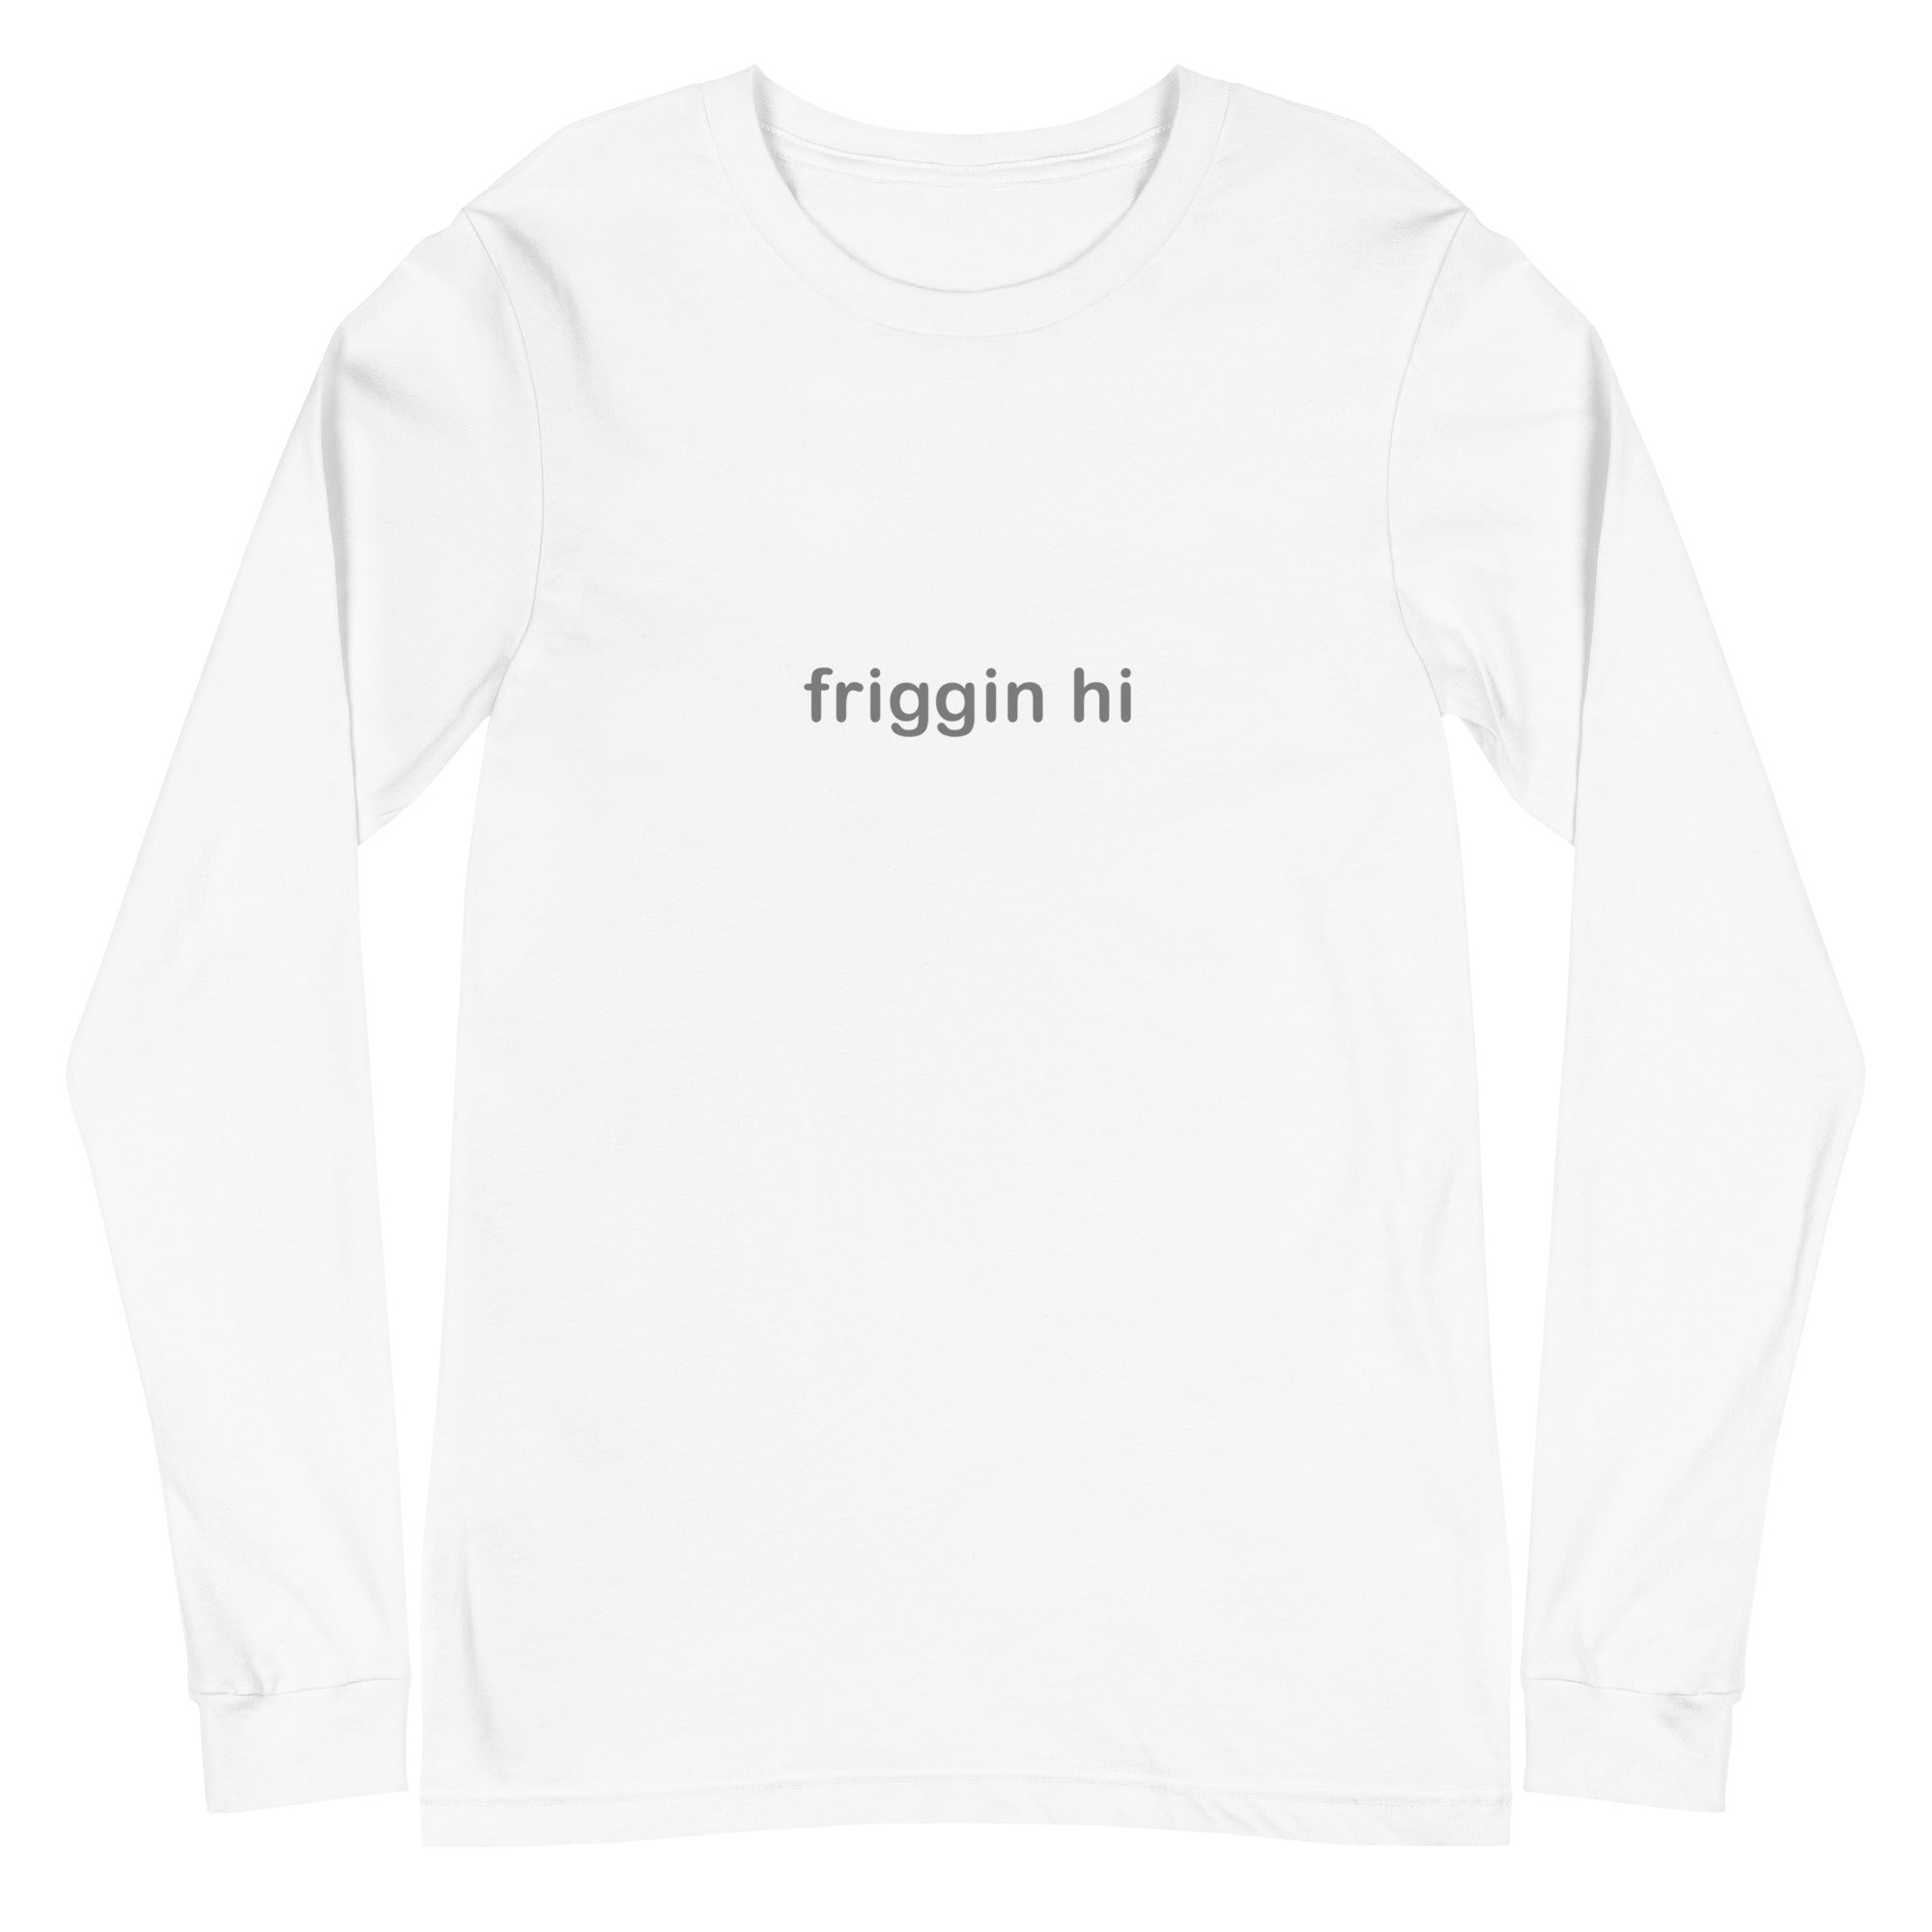 "Friggin Hi, Friggin Bye" Grey Text Adult Unisex Long Sleeve Tee